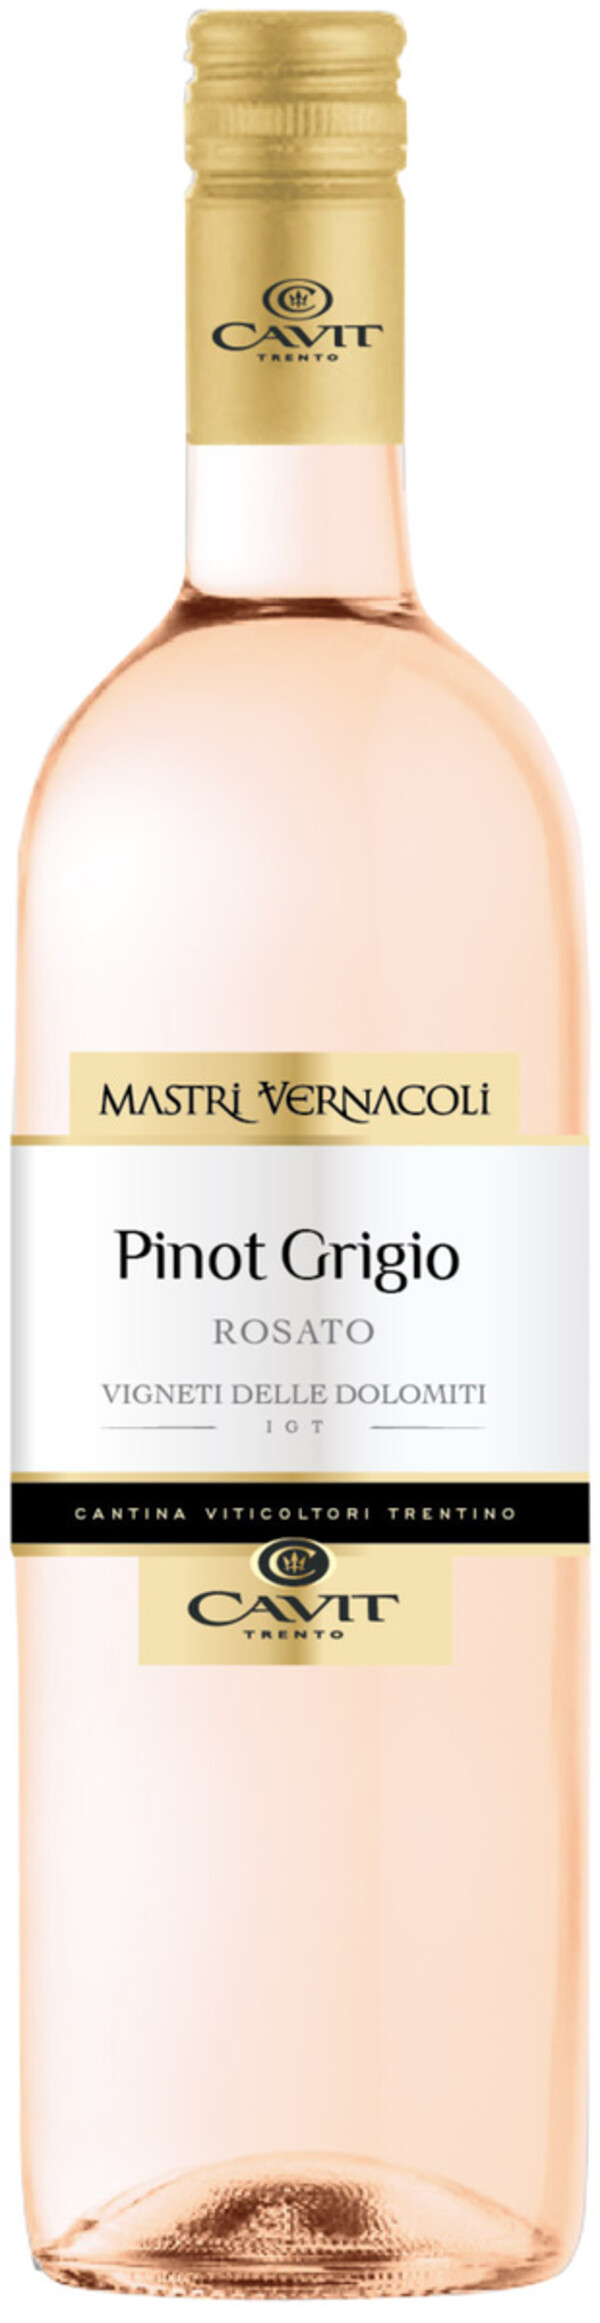 Bild 1 von Mastri Vernacoli Pinot Grigio Rosato delle Dolomiti IGT 2018 0,75L